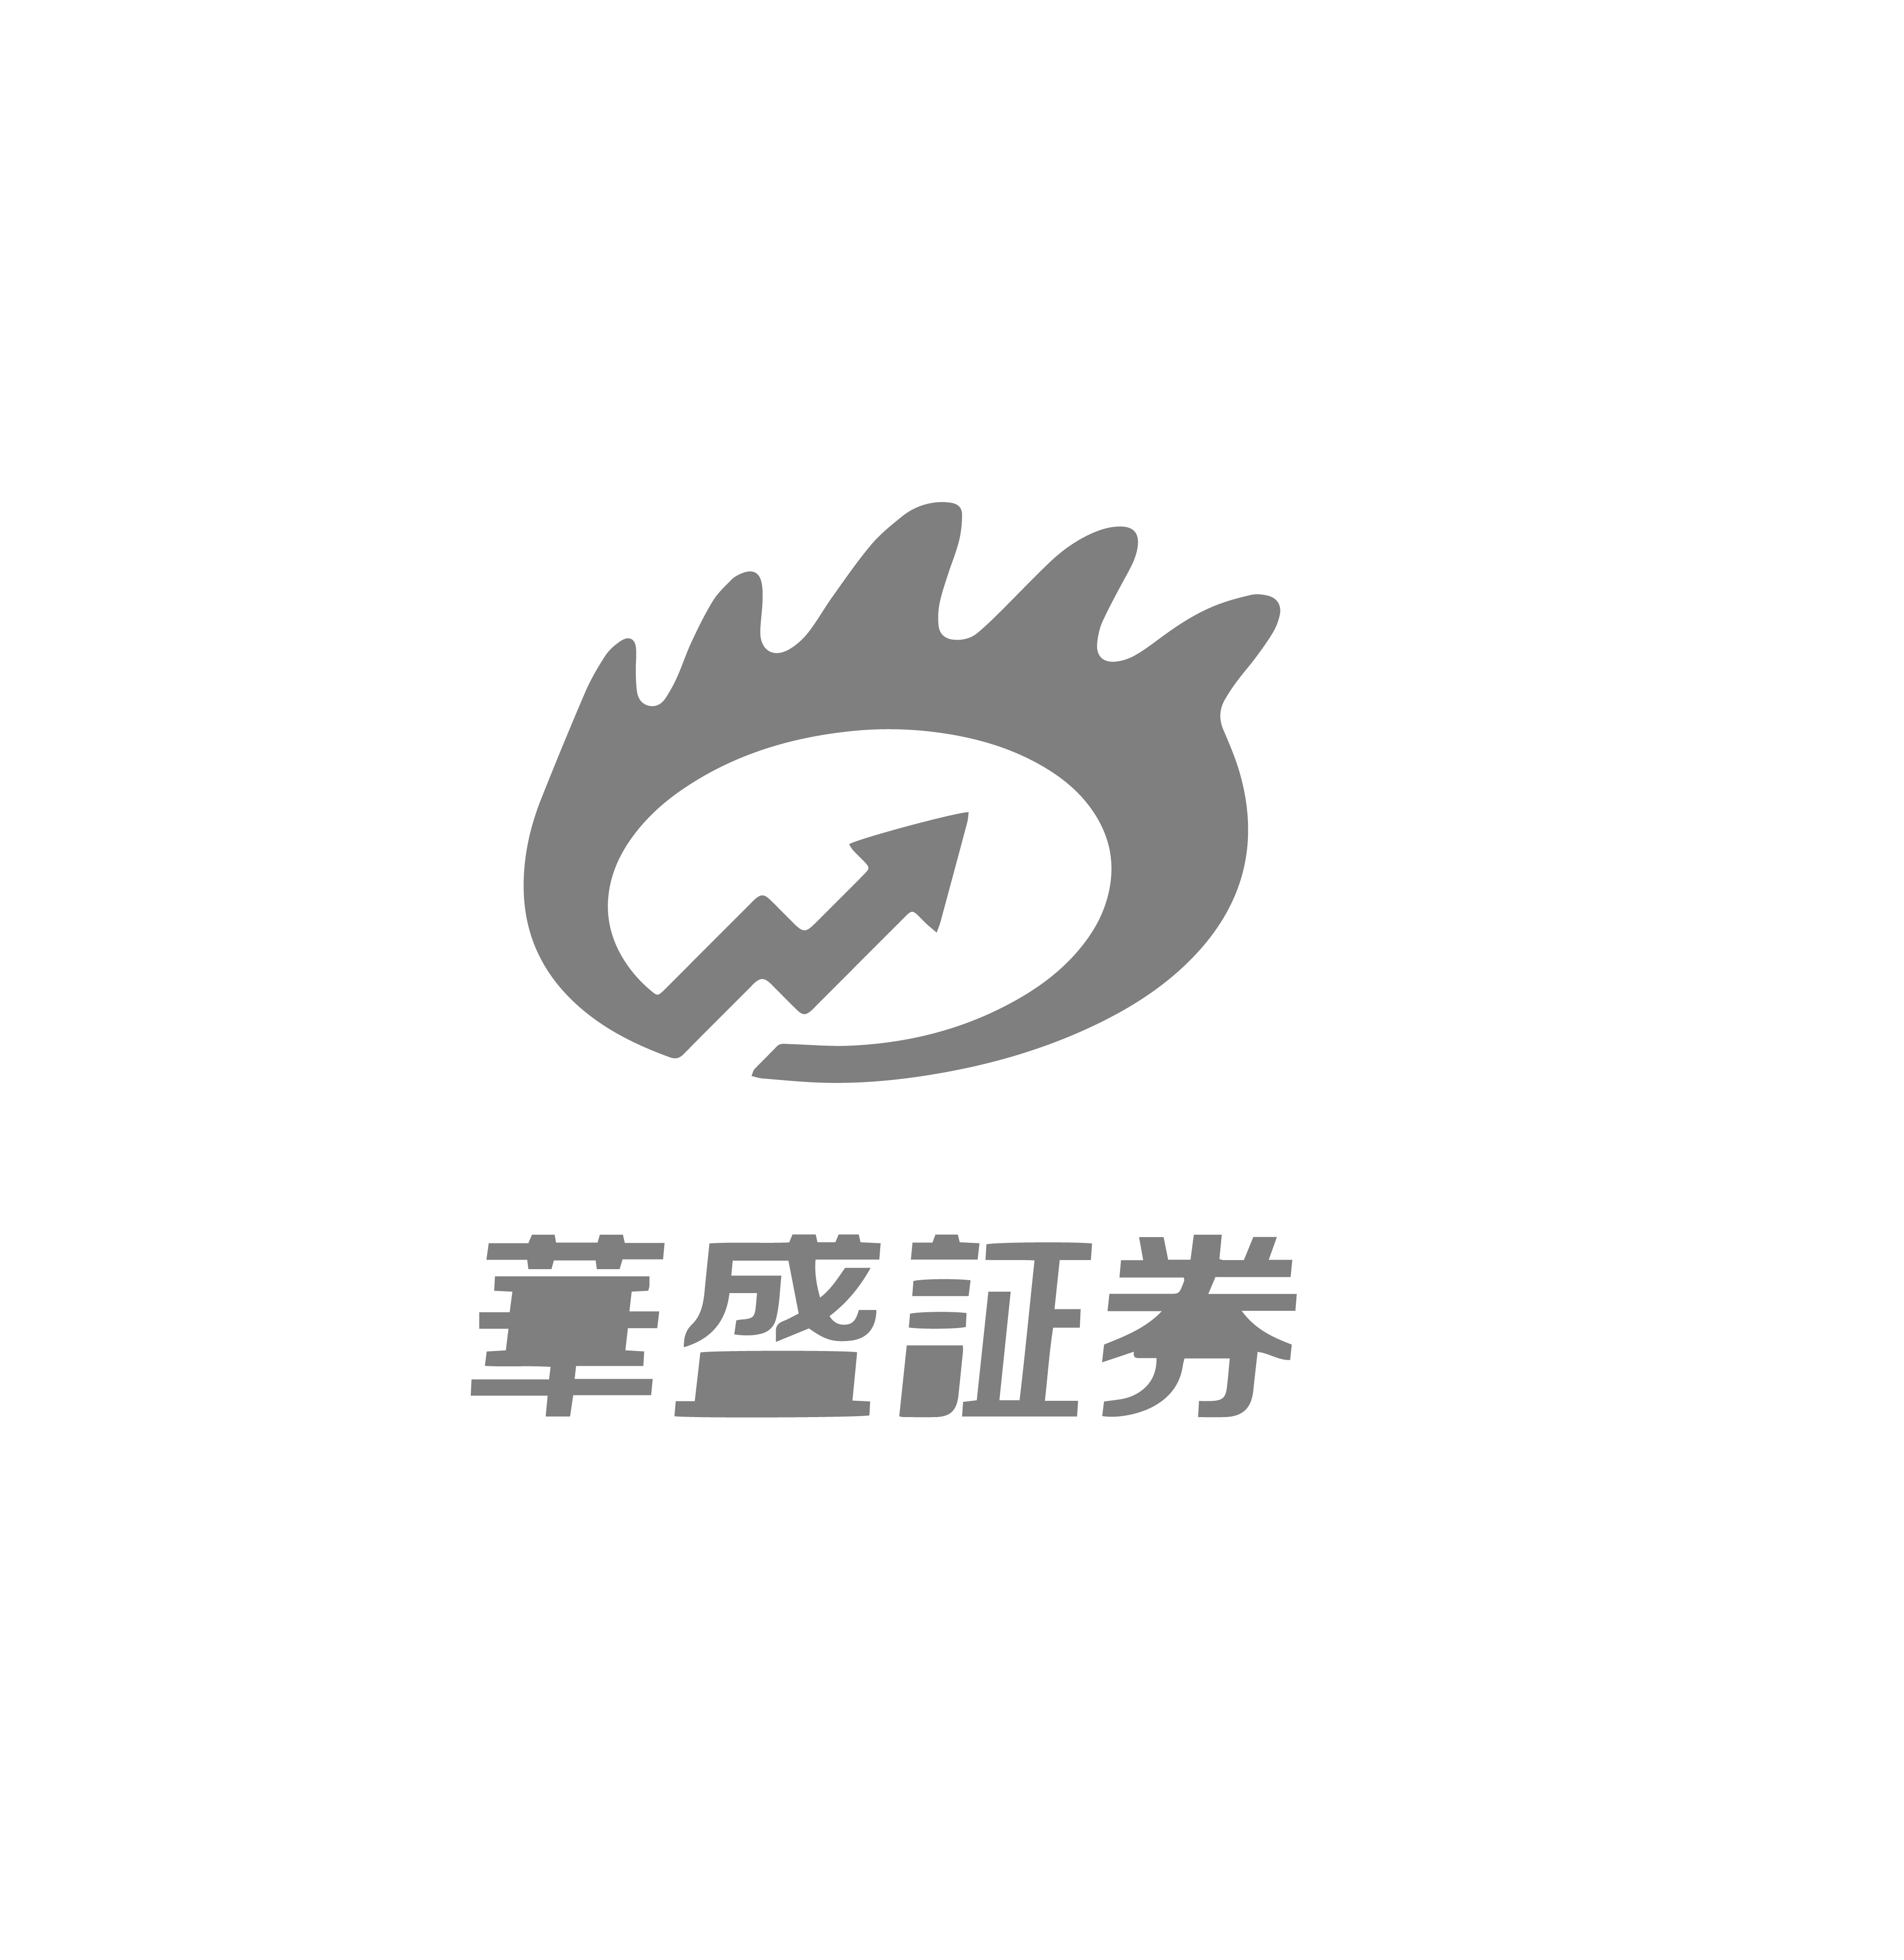 client logo png-12